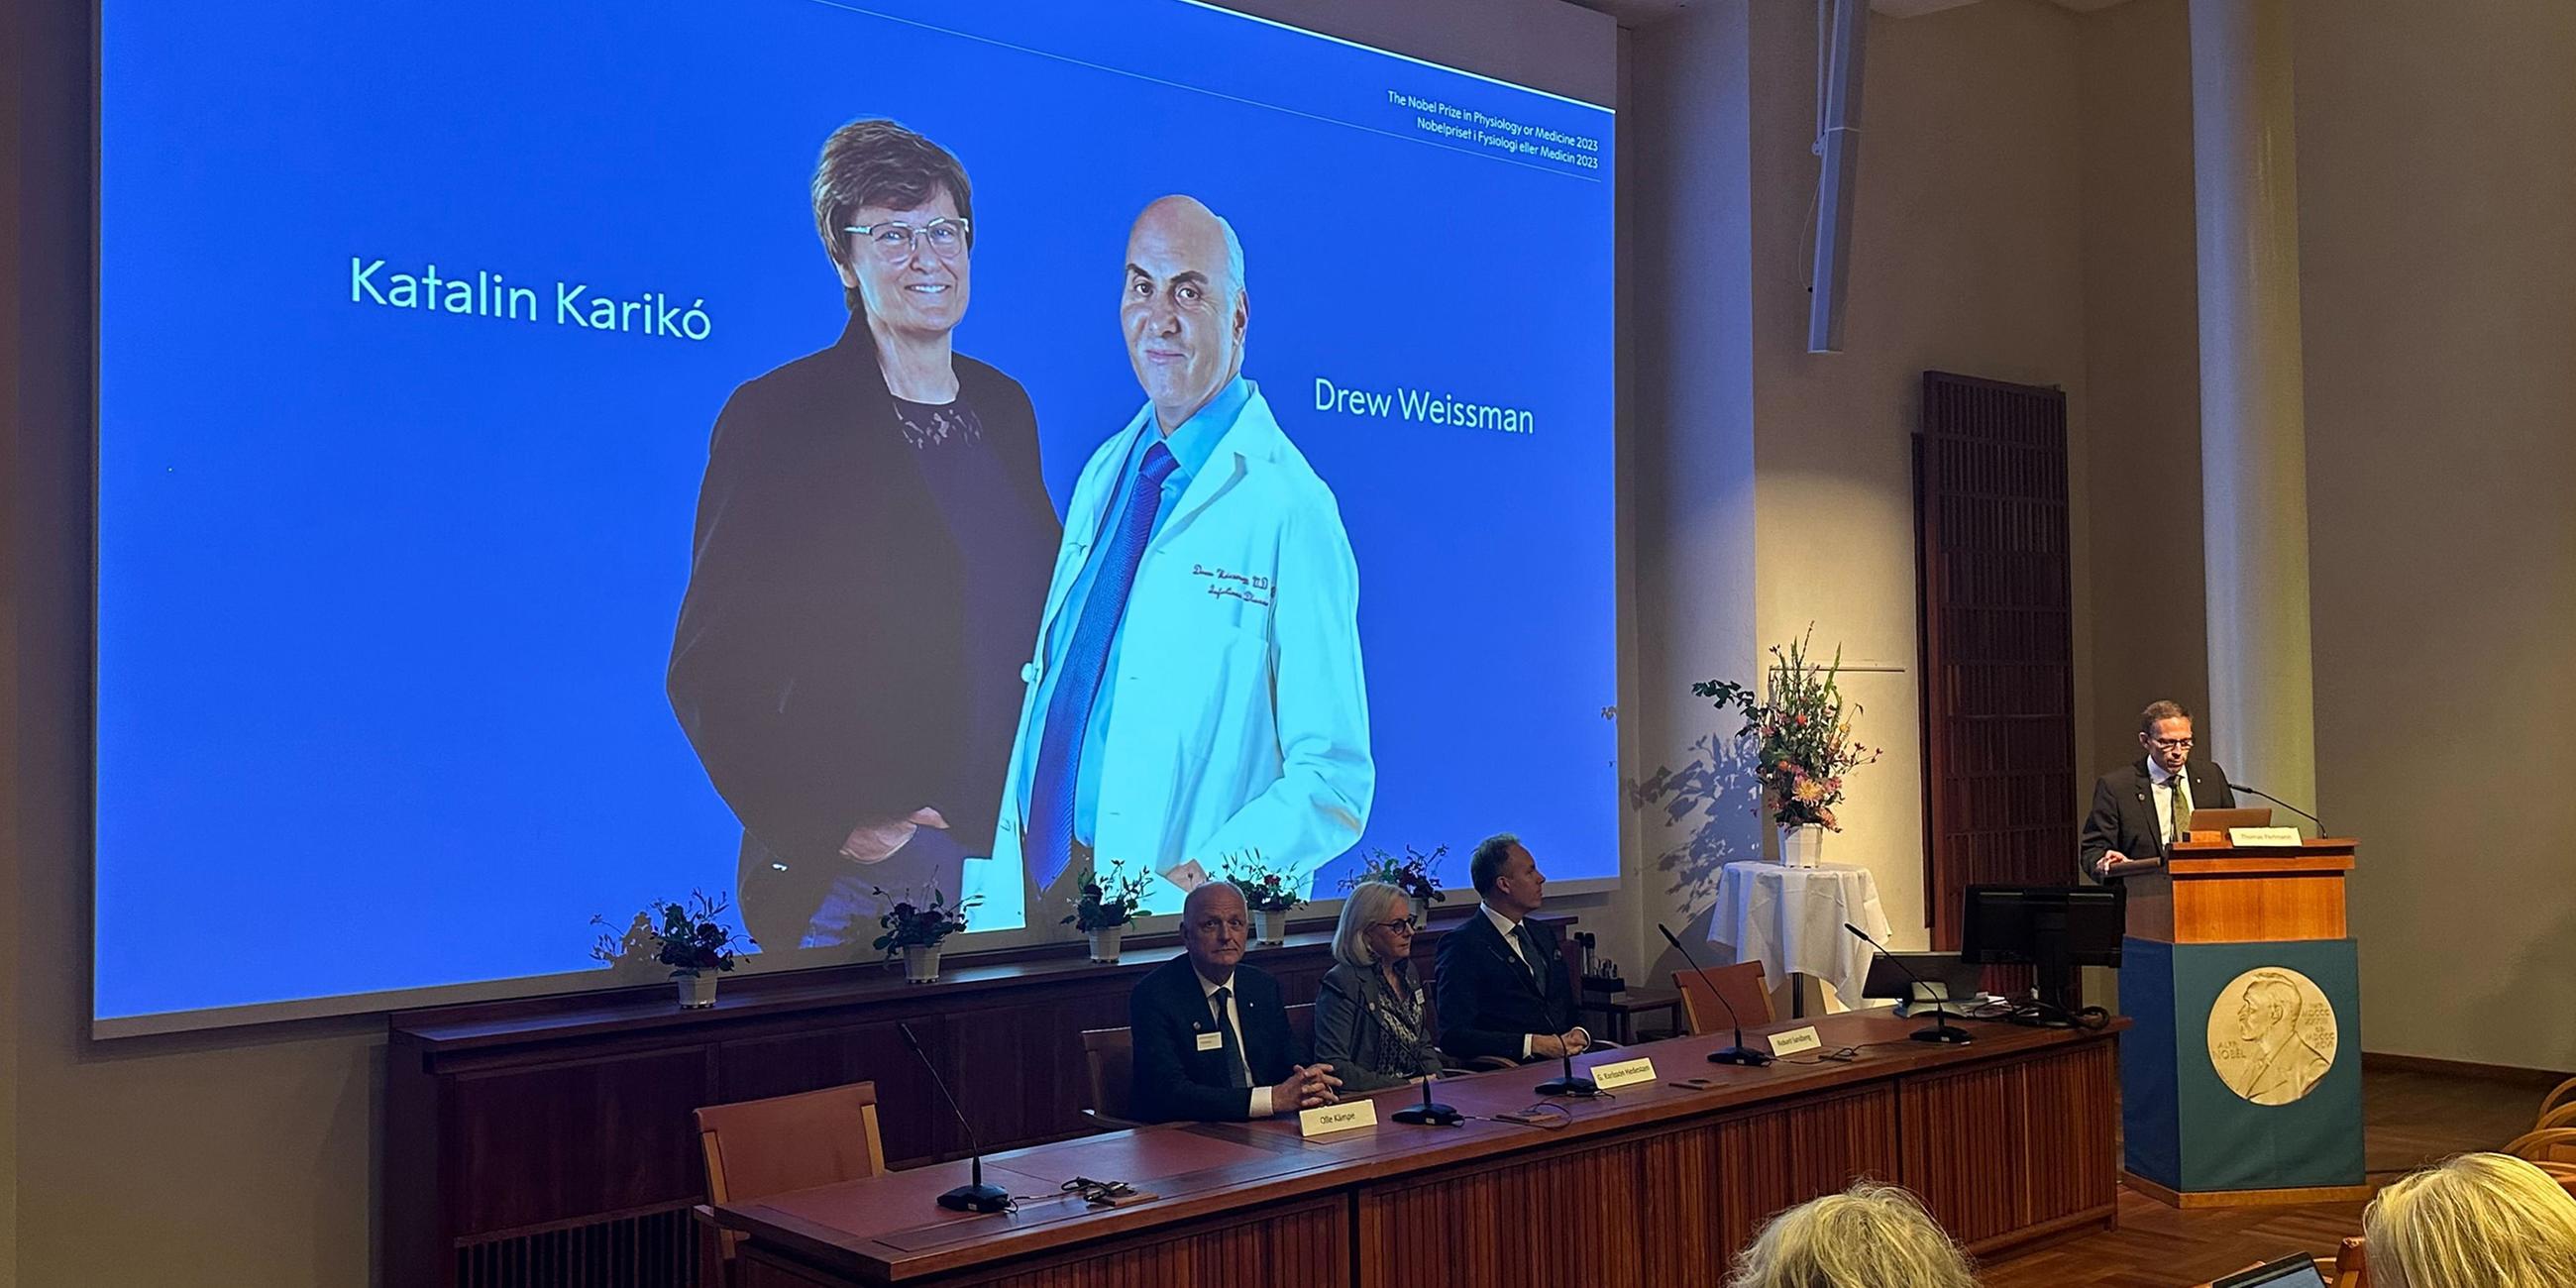 Fotos der Wissenschaftlerin Katalin Kariko und des Wissenschaftlers Drew Weissman sind bei der Bekanntgabe des Nobelpreises für Medizin auf einer Leinwand zu sehen.